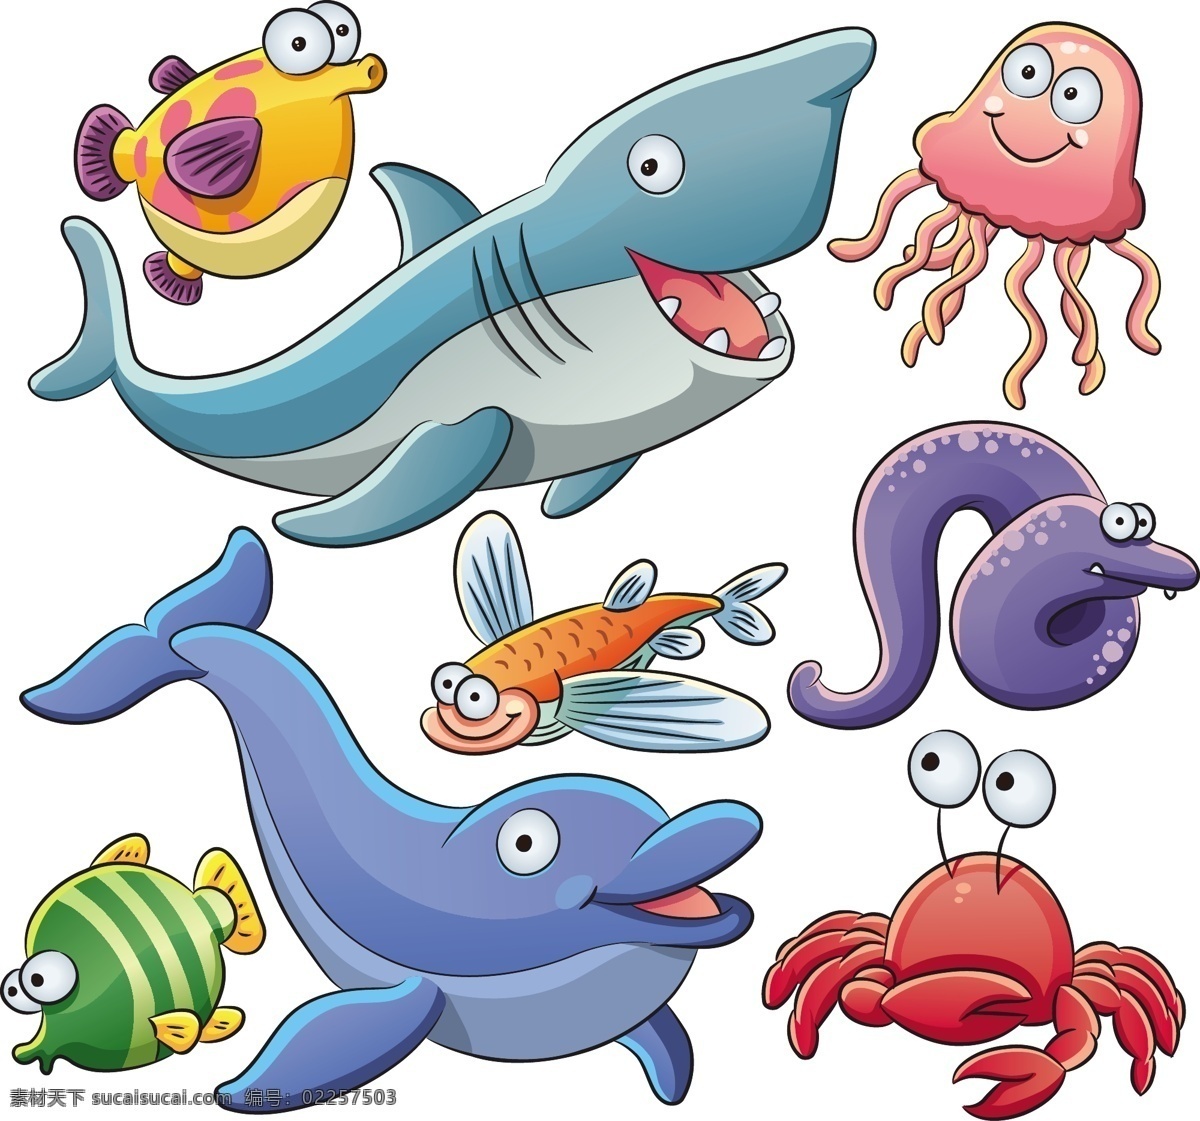 漫画 海洋 动物 海豚 海洋生物 鲸鱼 卡通 蟹 卡通漫画 5的海洋动物 海洋动物5 向量 免费 矢量 动漫下载 矢量eps pes 比目鱼 illustrator 矢量图 其他矢量图